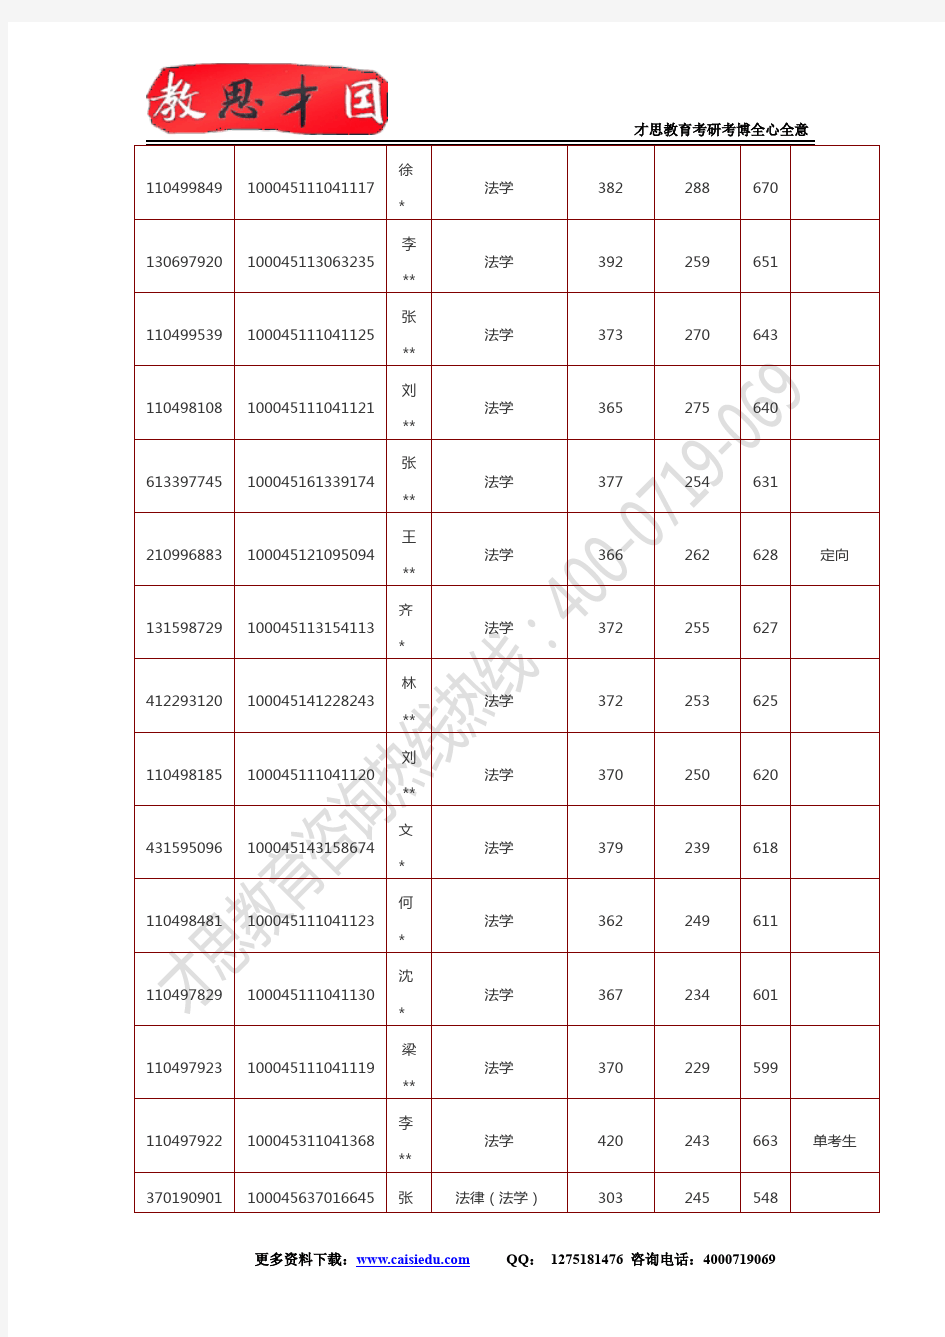 北交考研--2015年北京交通大学考研录取名单